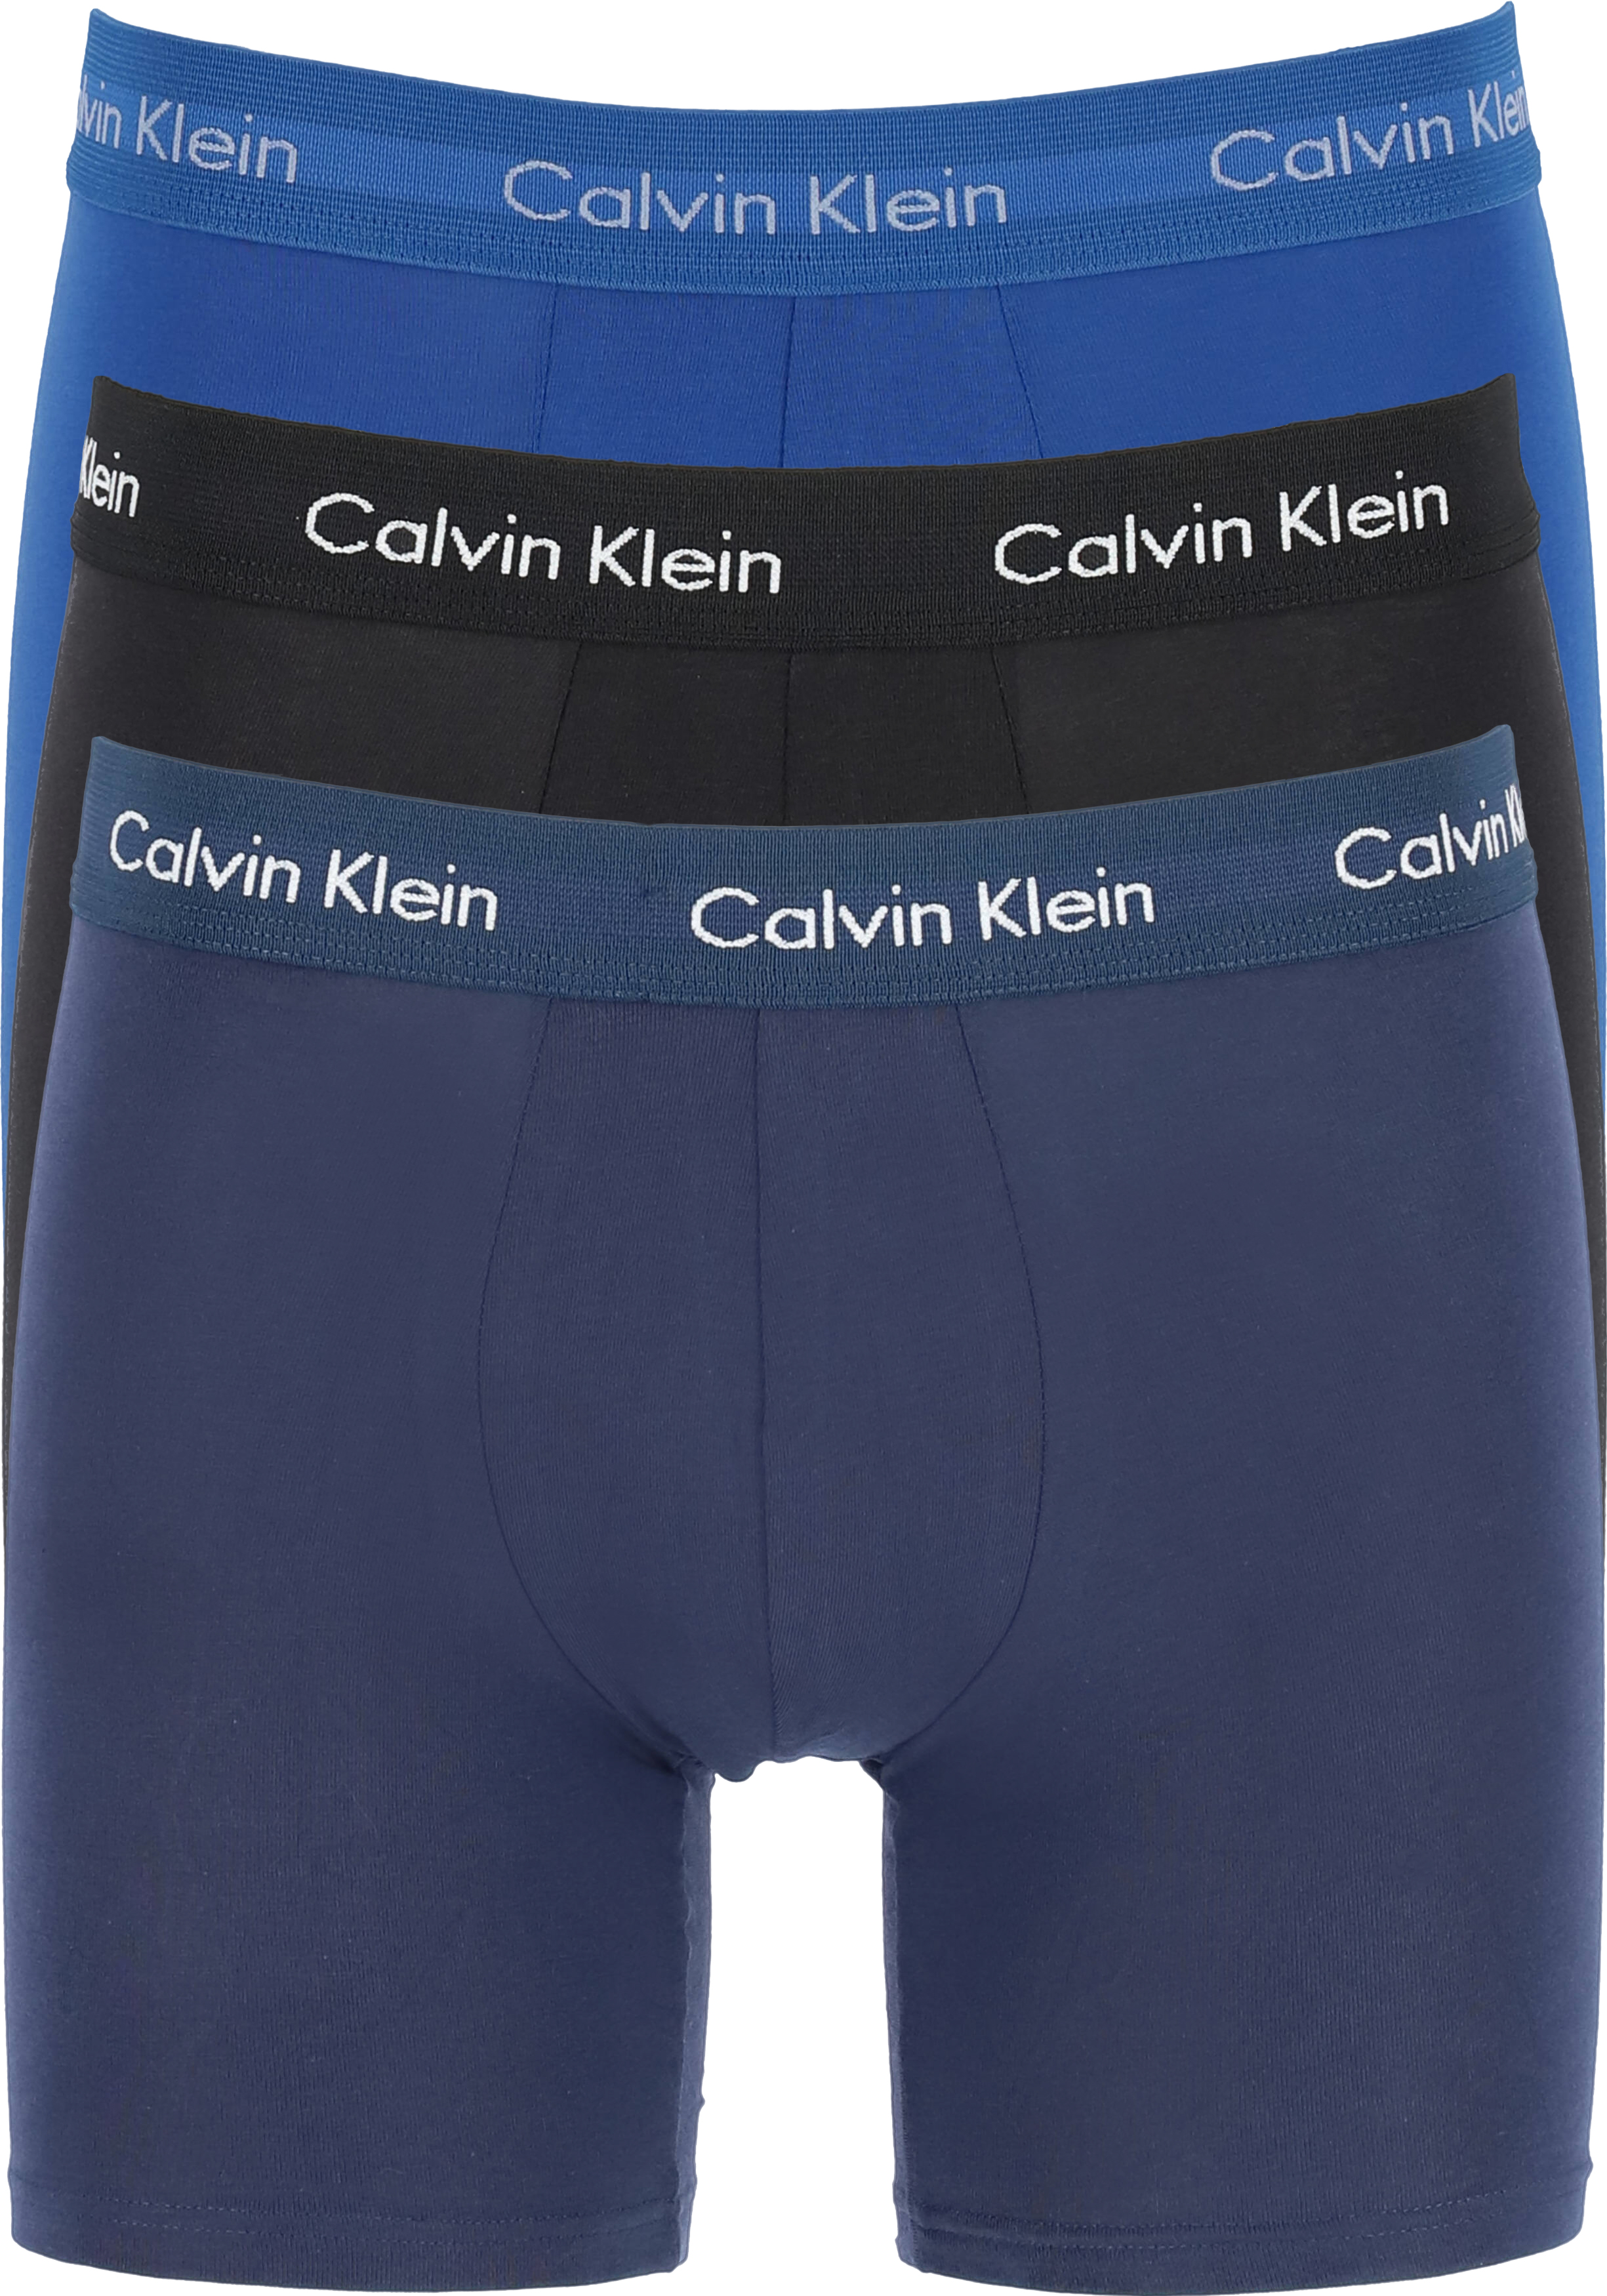 Oom of meneer In beweging Ontoegankelijk Calvin Klein Cotton Stretch boxer brief (3-pack), heren boxers extra... -  Zomer SALE tot 50% korting